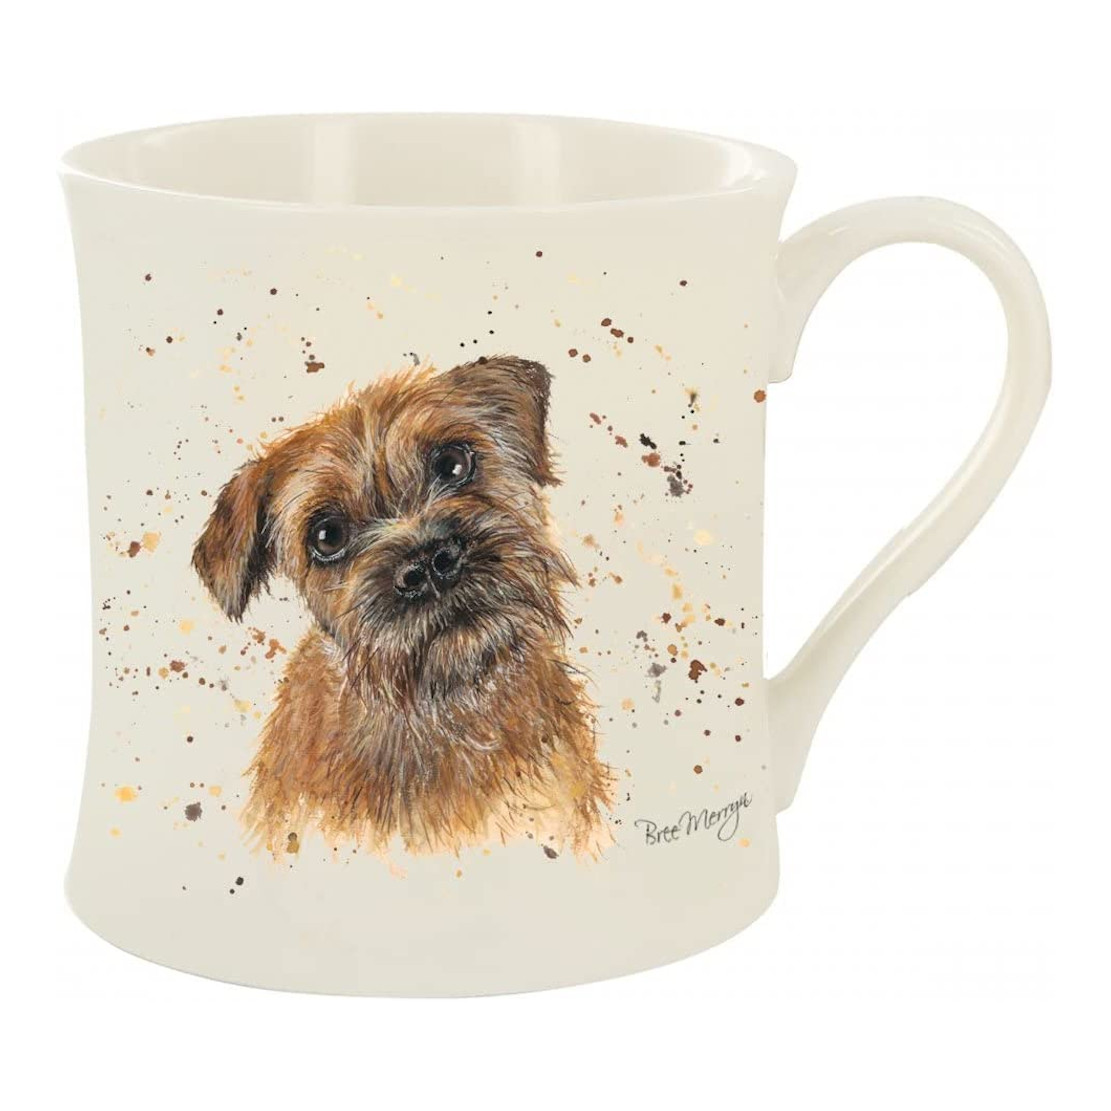 Bree Merryn Buddy Terrier Mug